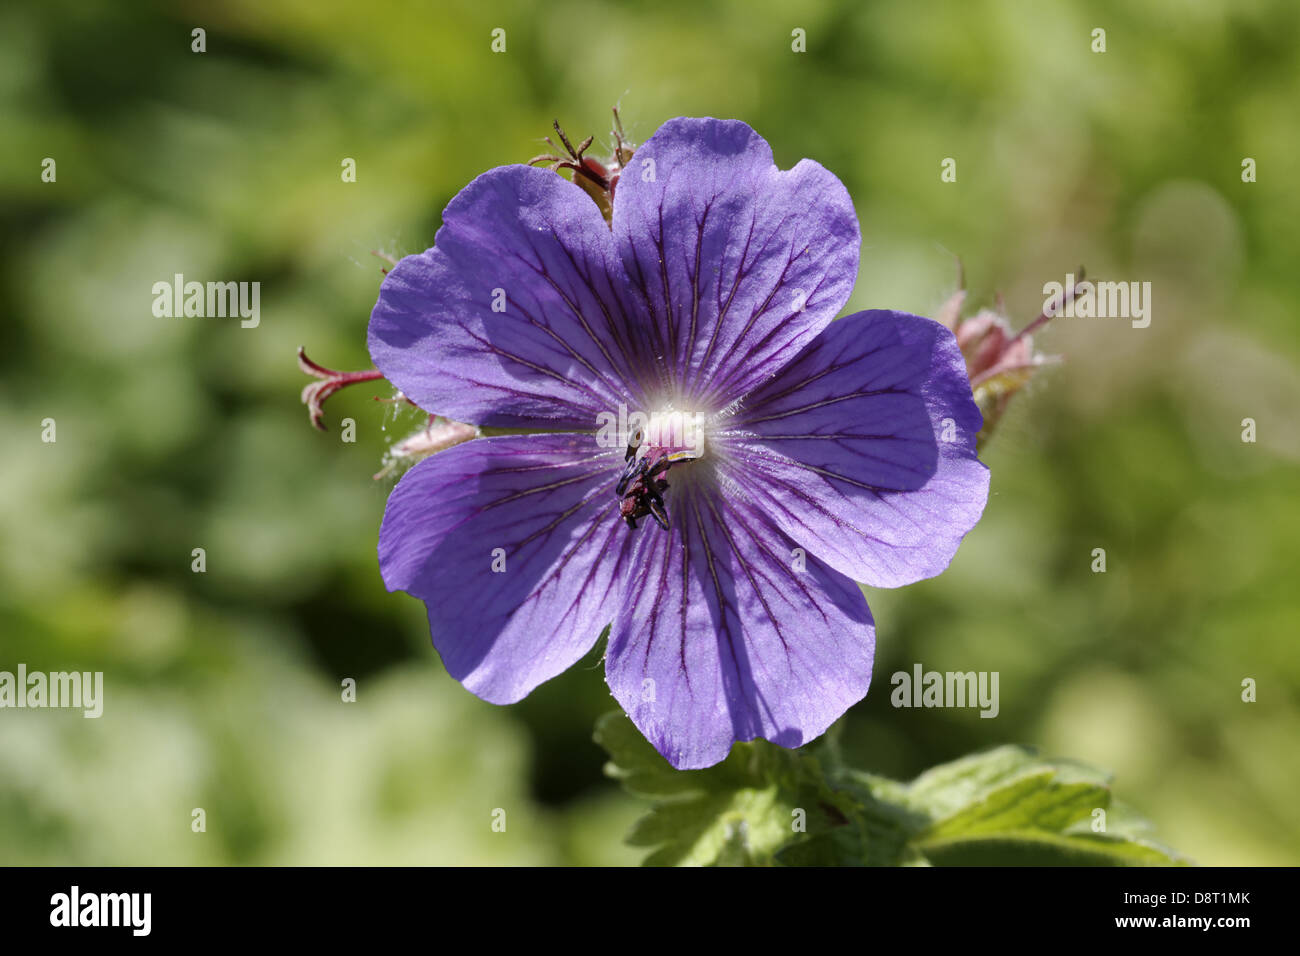 Geranium ibericum, Caucasus geranium Stock Photo